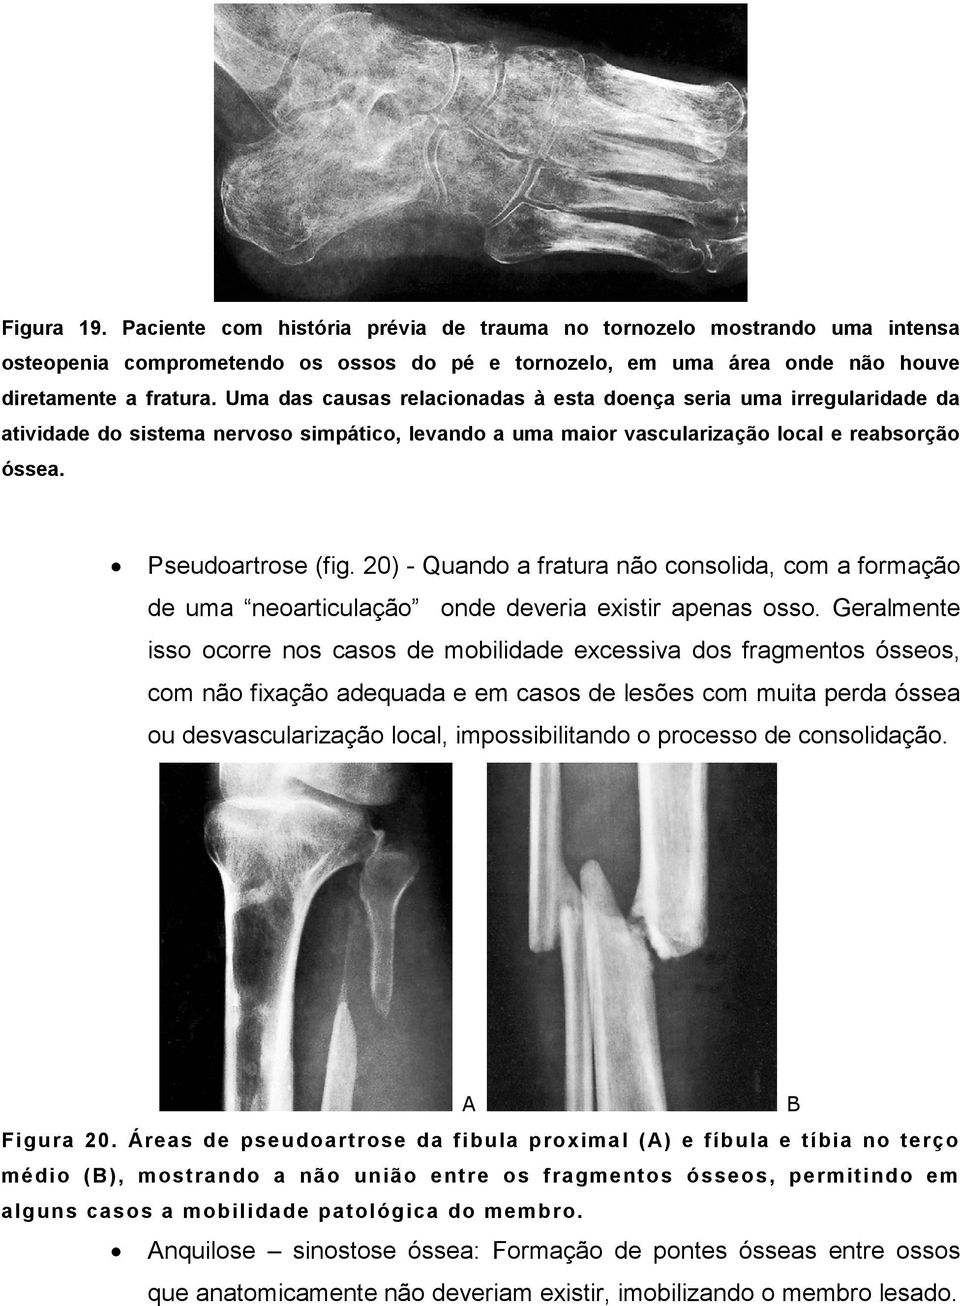 20) - Quando a fratura não consolida, com a formação de uma neoarticulação onde deveria existir apenas osso.